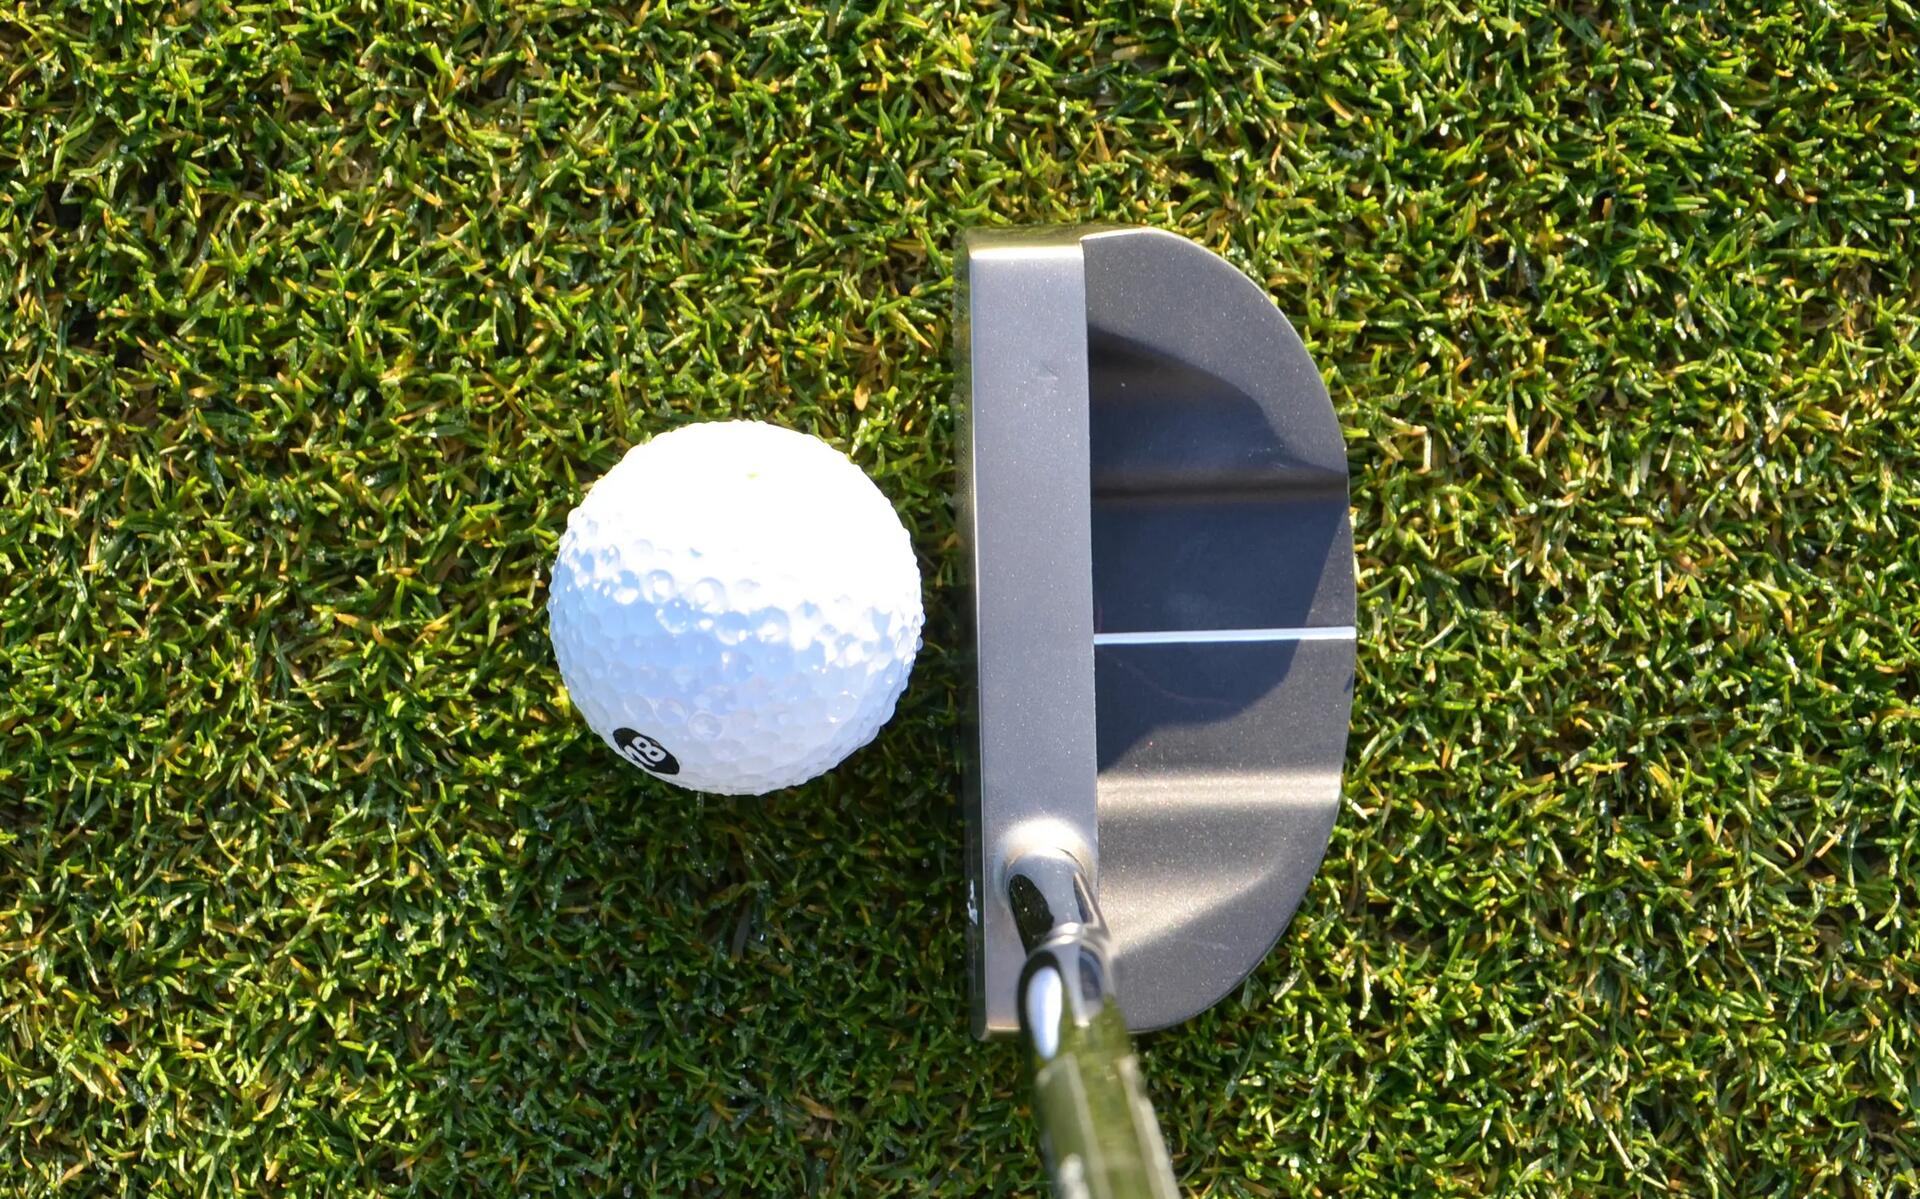 piłeczka golfowa leżąca na trawie obok kija golfowego